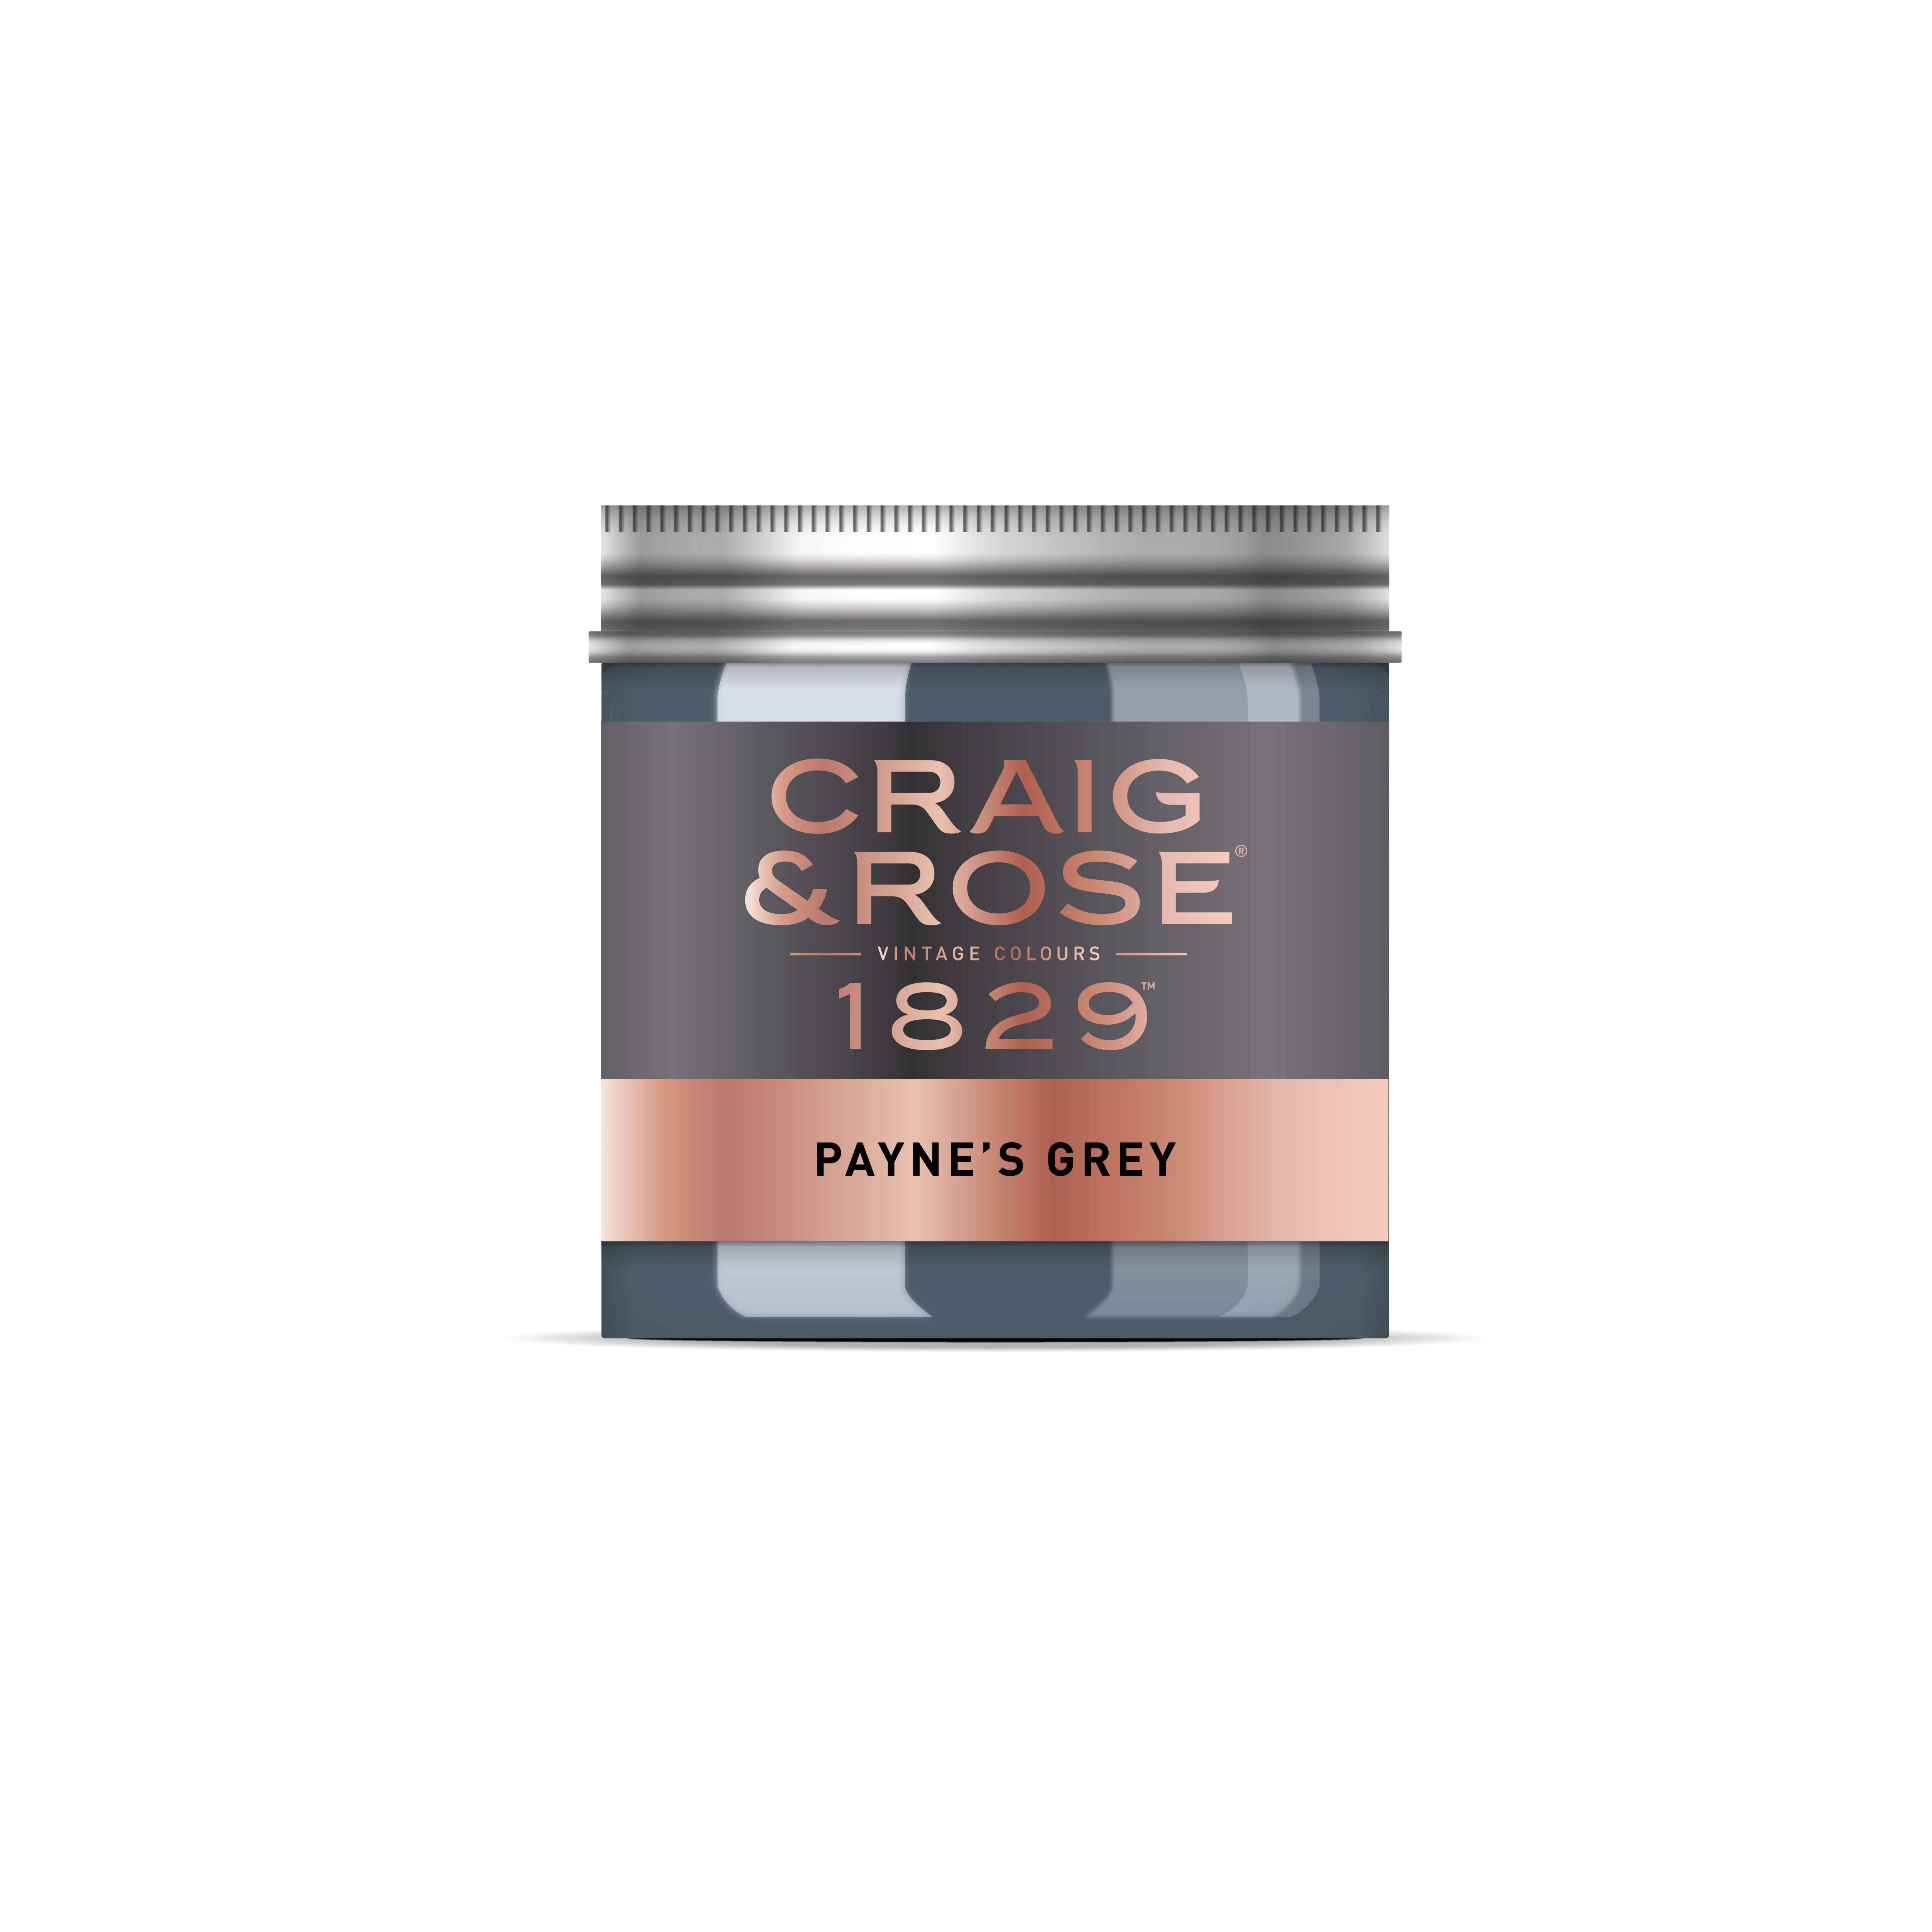 Payne's Grey l 1829 Vintage Colours l Craig & Rose Paint